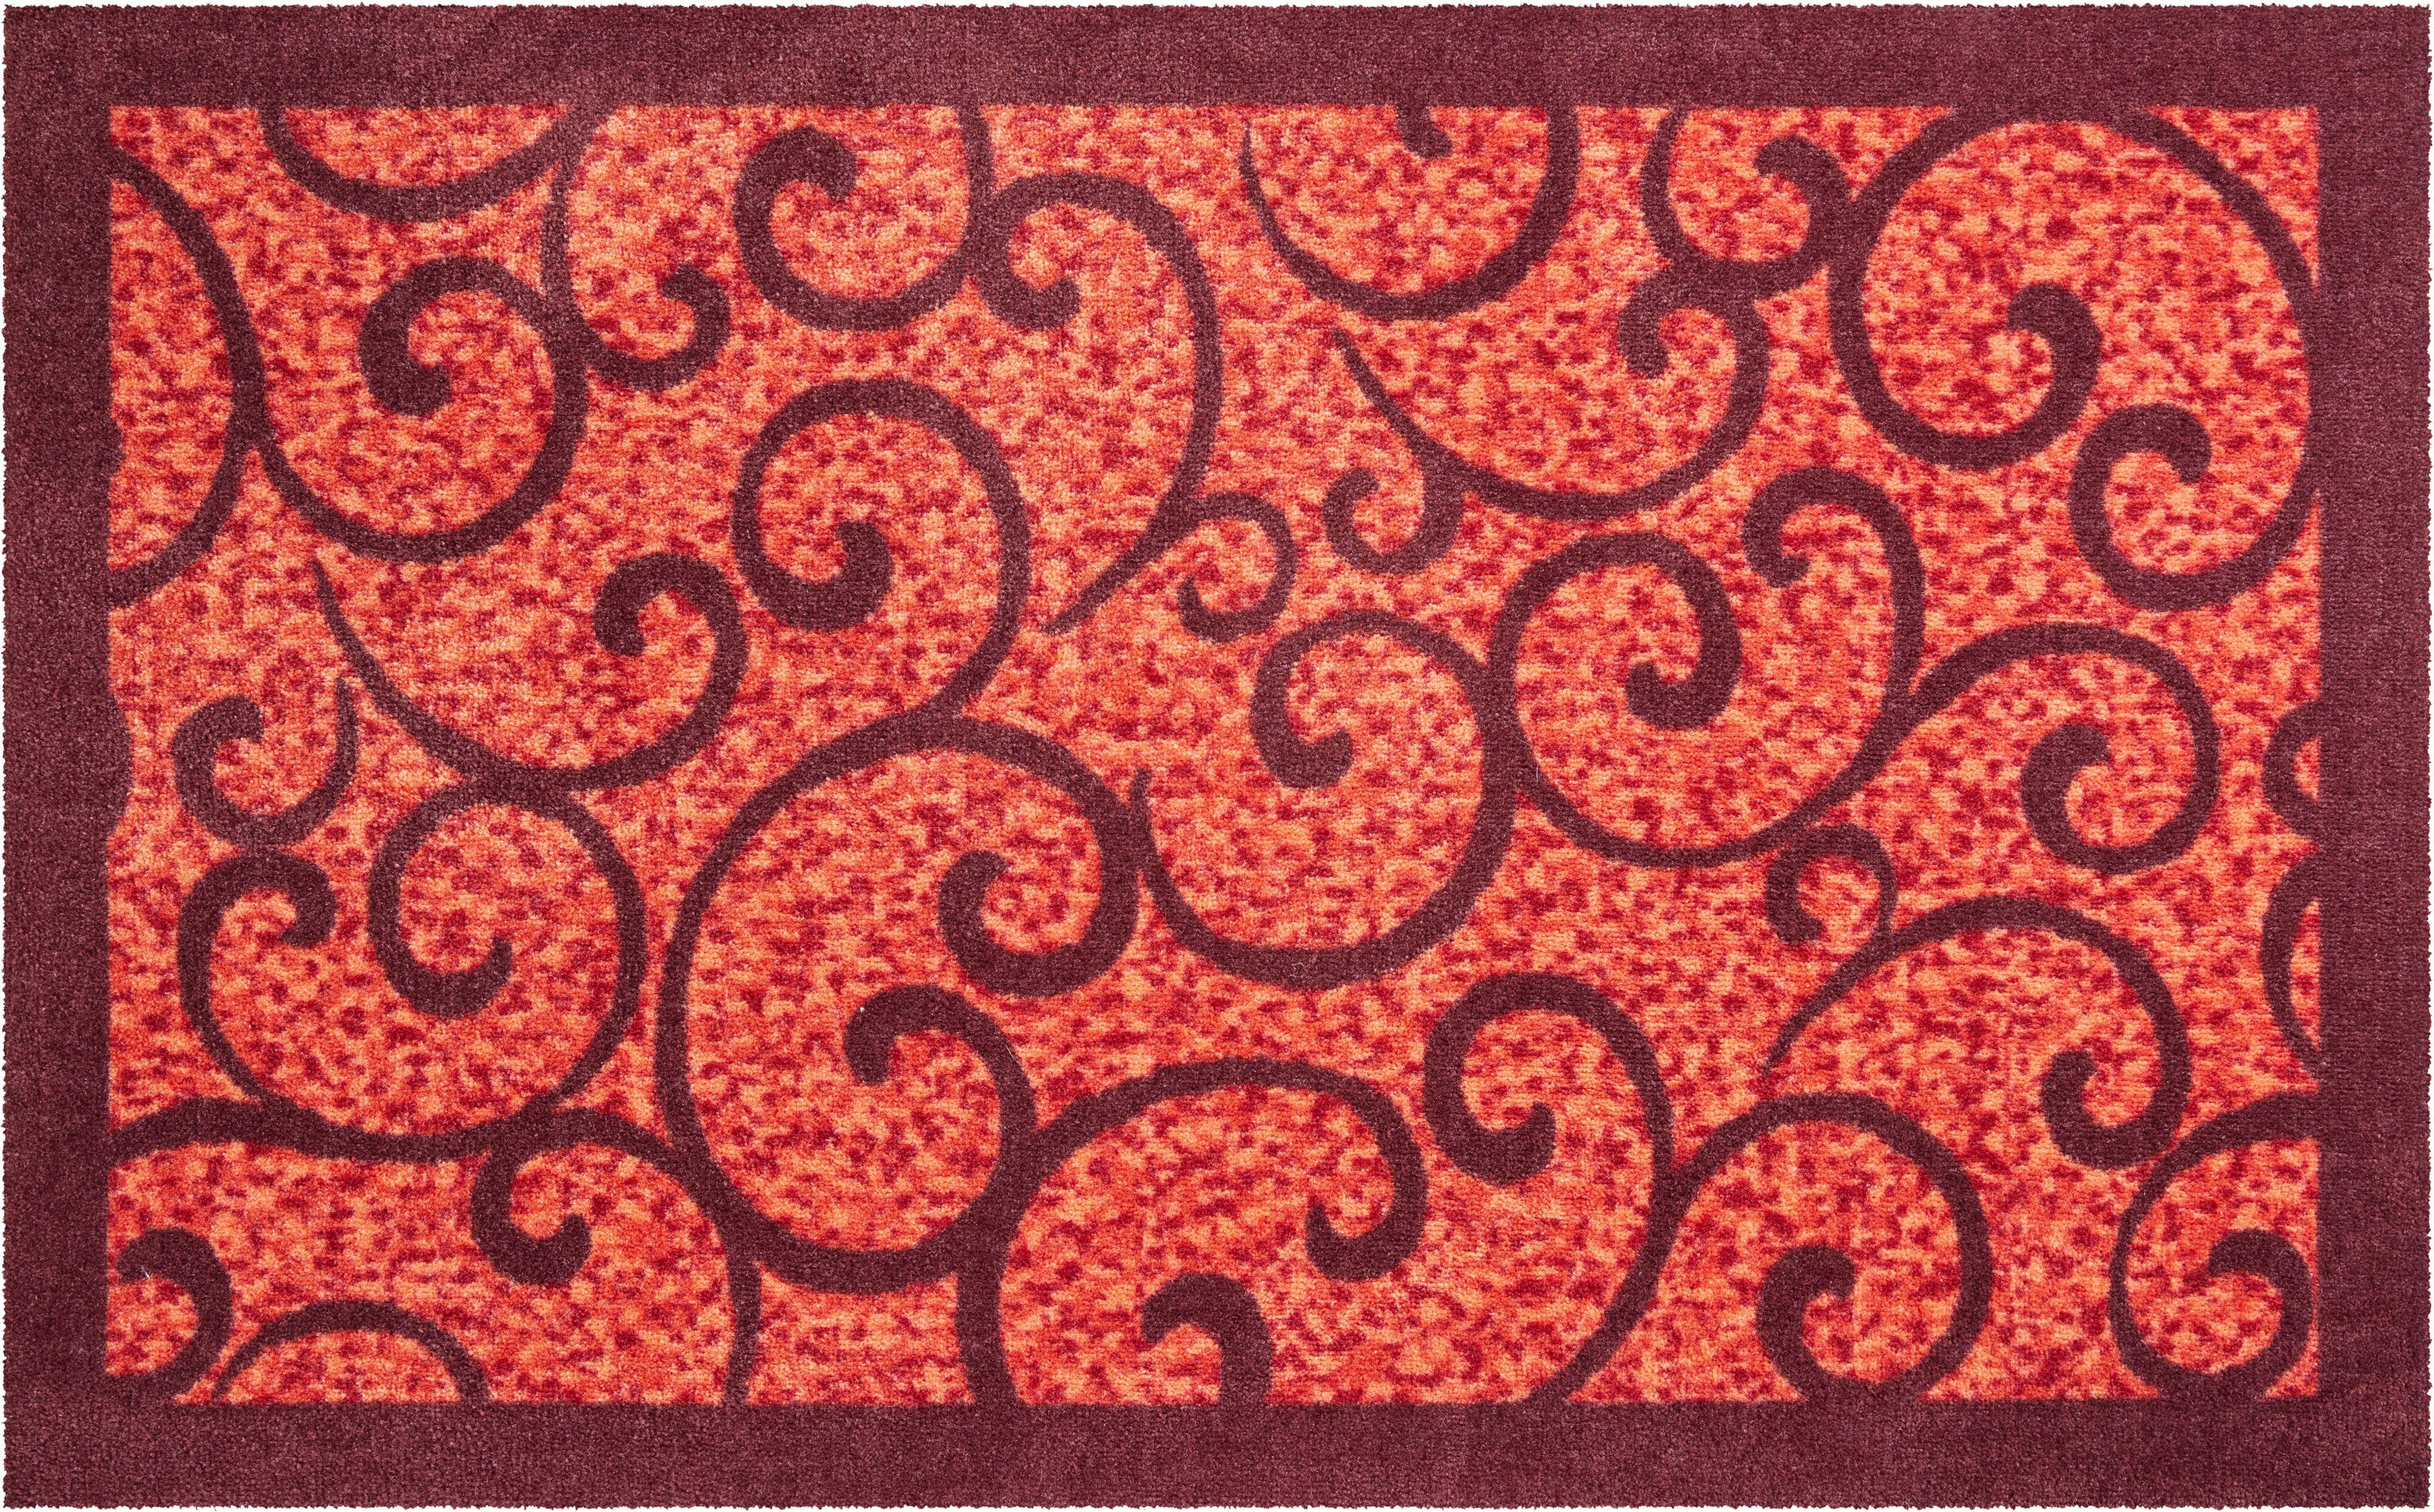 Grillo, rechteckig, verspieltes In- rot Grund, Höhe: Teppich 8 Outdoor Bordüre Design, geeignet, und mit mm, Teppich